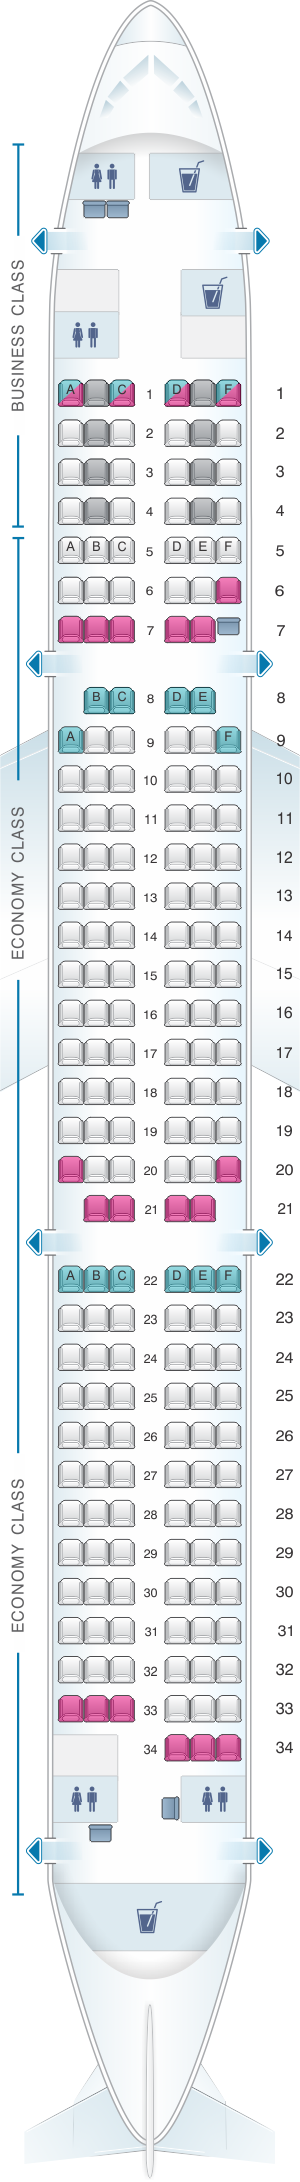 Seat Map Finnair Airbus A321 188PAX | SeatMaestro